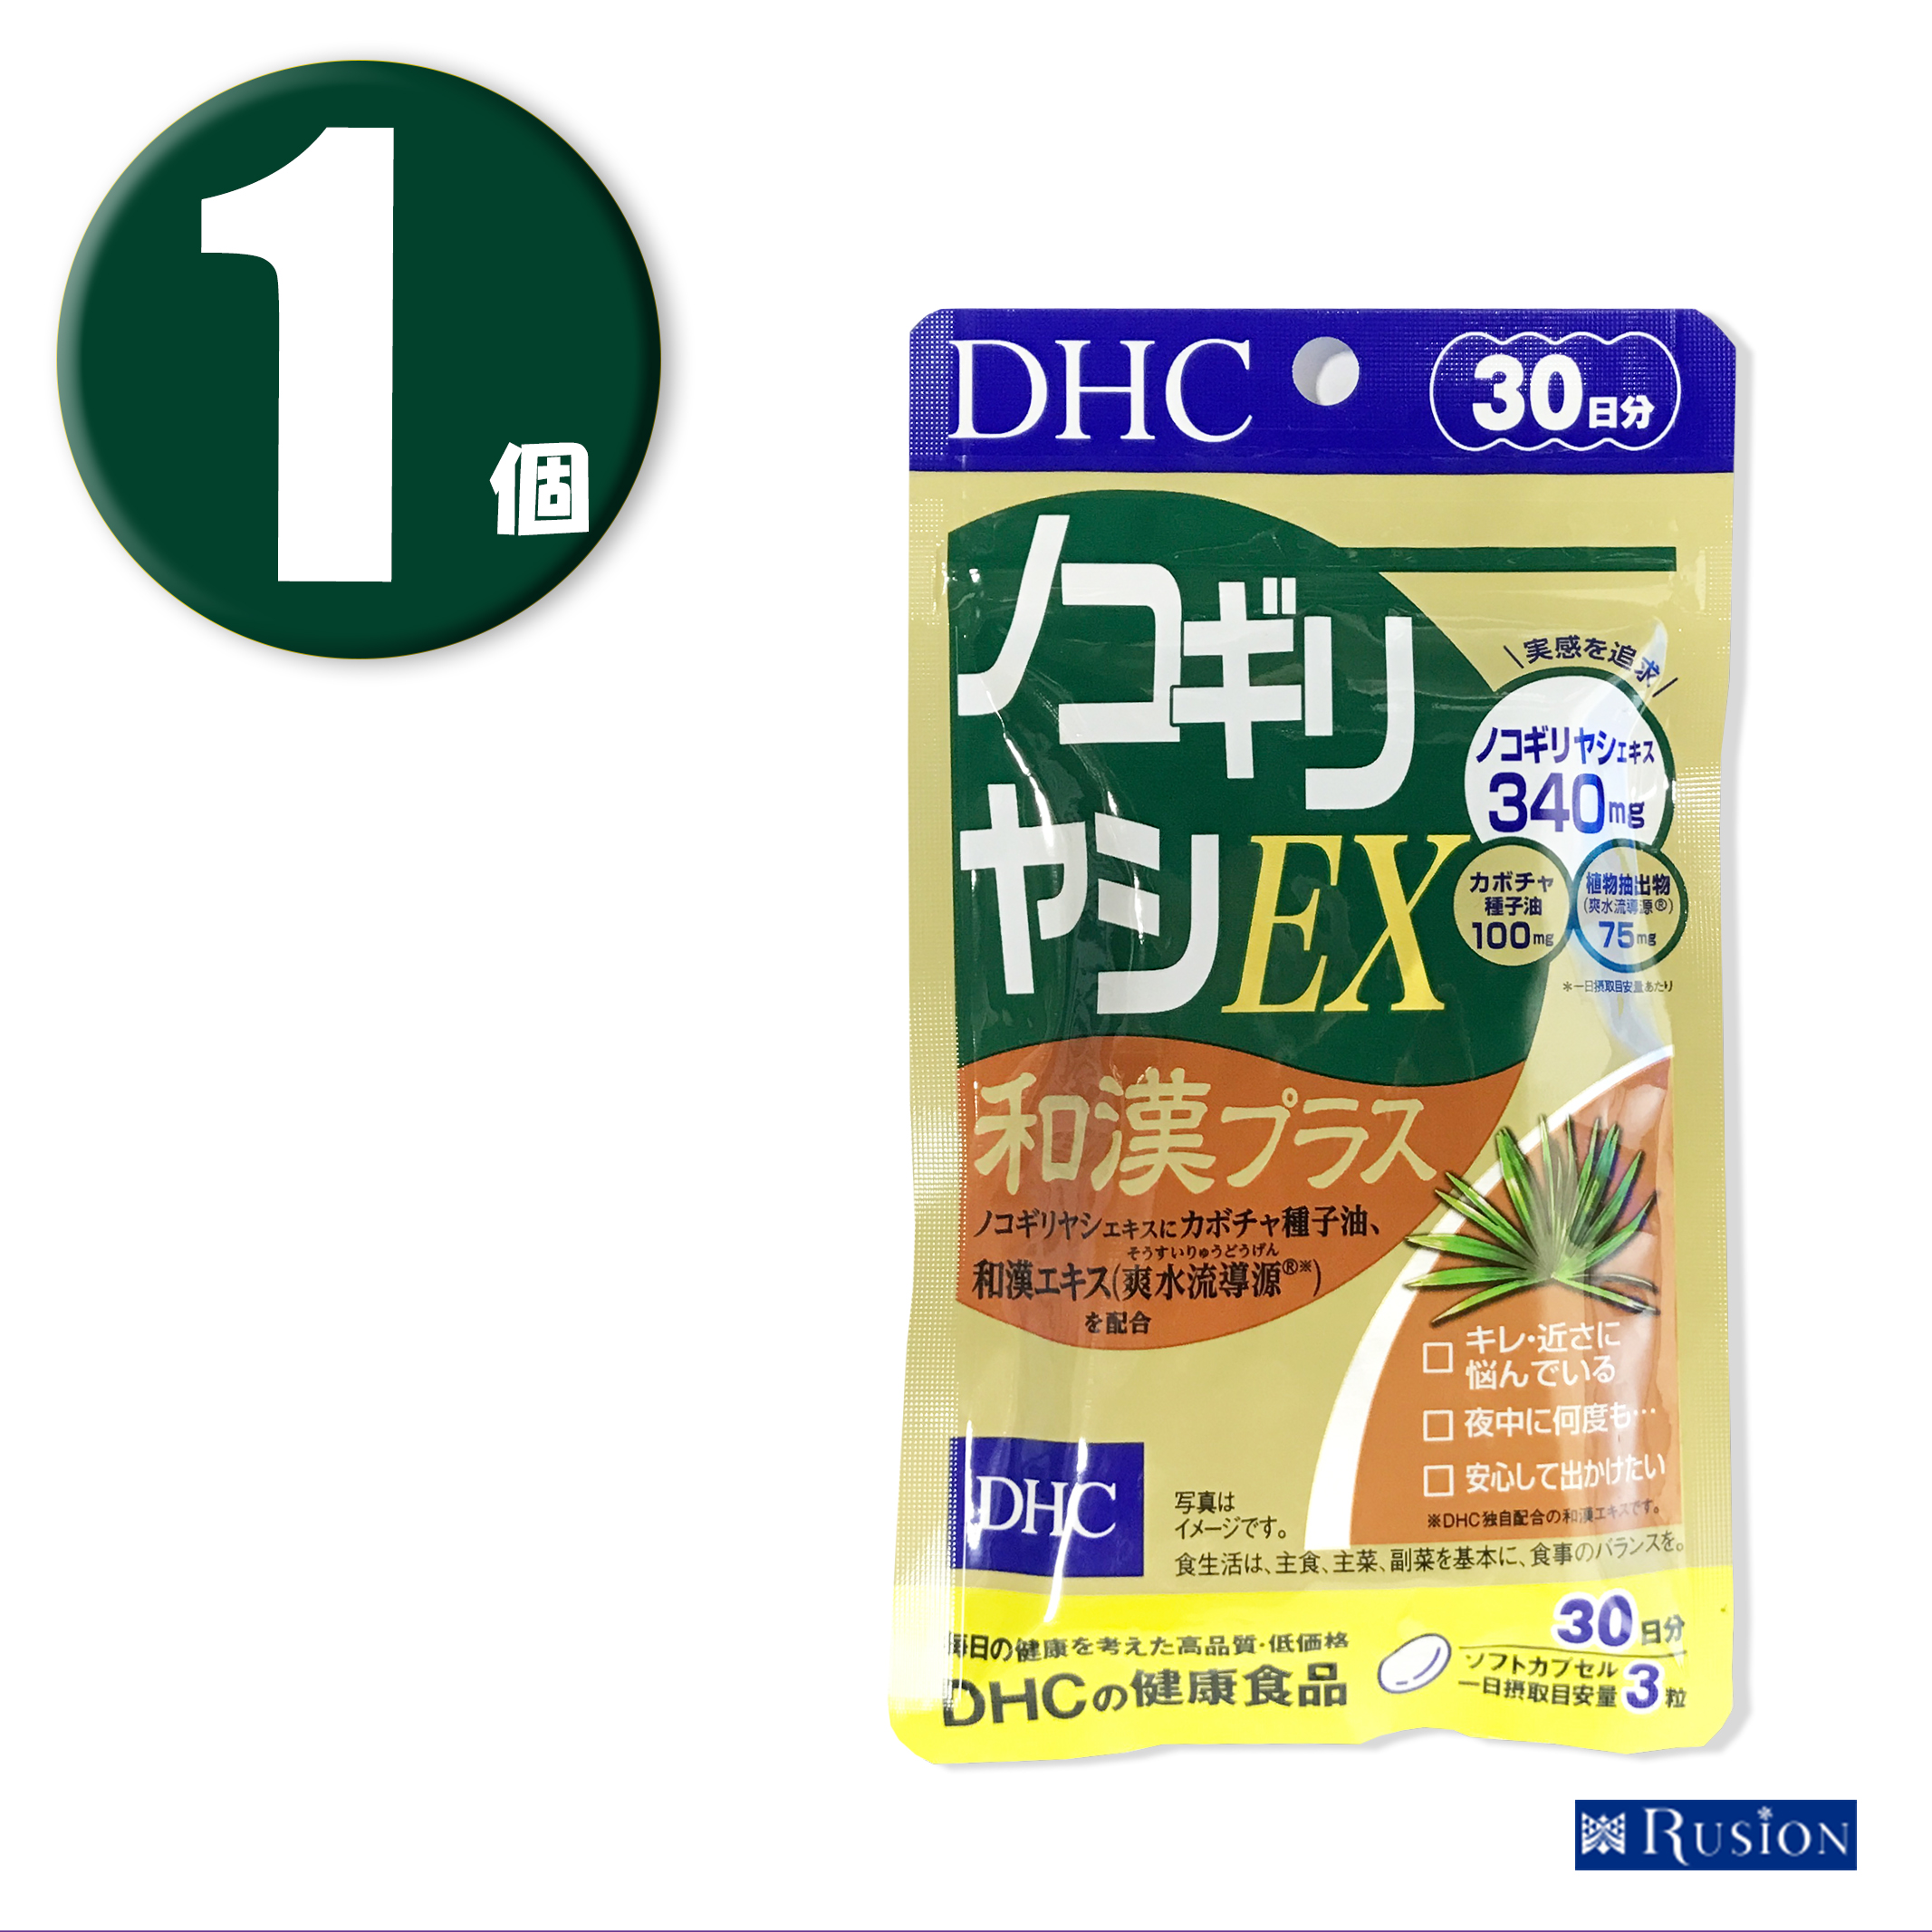 (1個) DHC サプリメント ノコギリヤシEX 和漢プラス 30日分 ディーエイチシー 健康食品